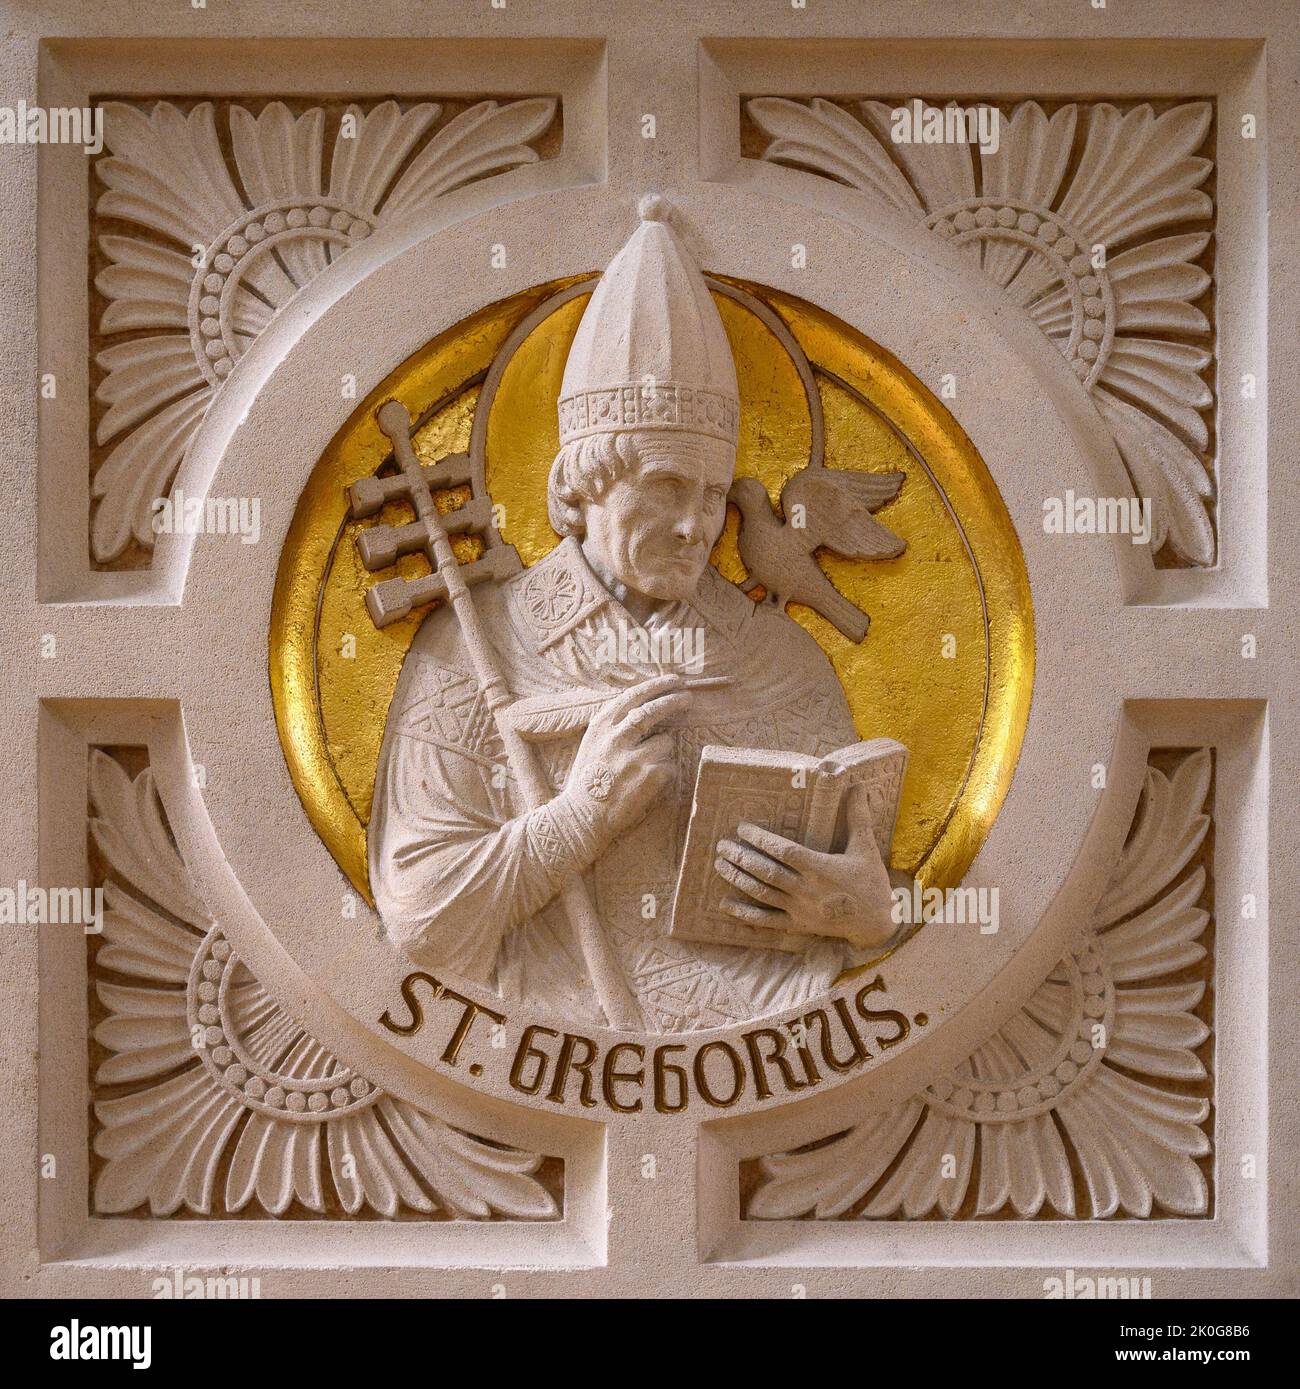 San Gregorio. Relieve en el púlpito de la Iglesia de Santos Cosmas y Damián en Clervaux, Luxemburgo. Foto de stock